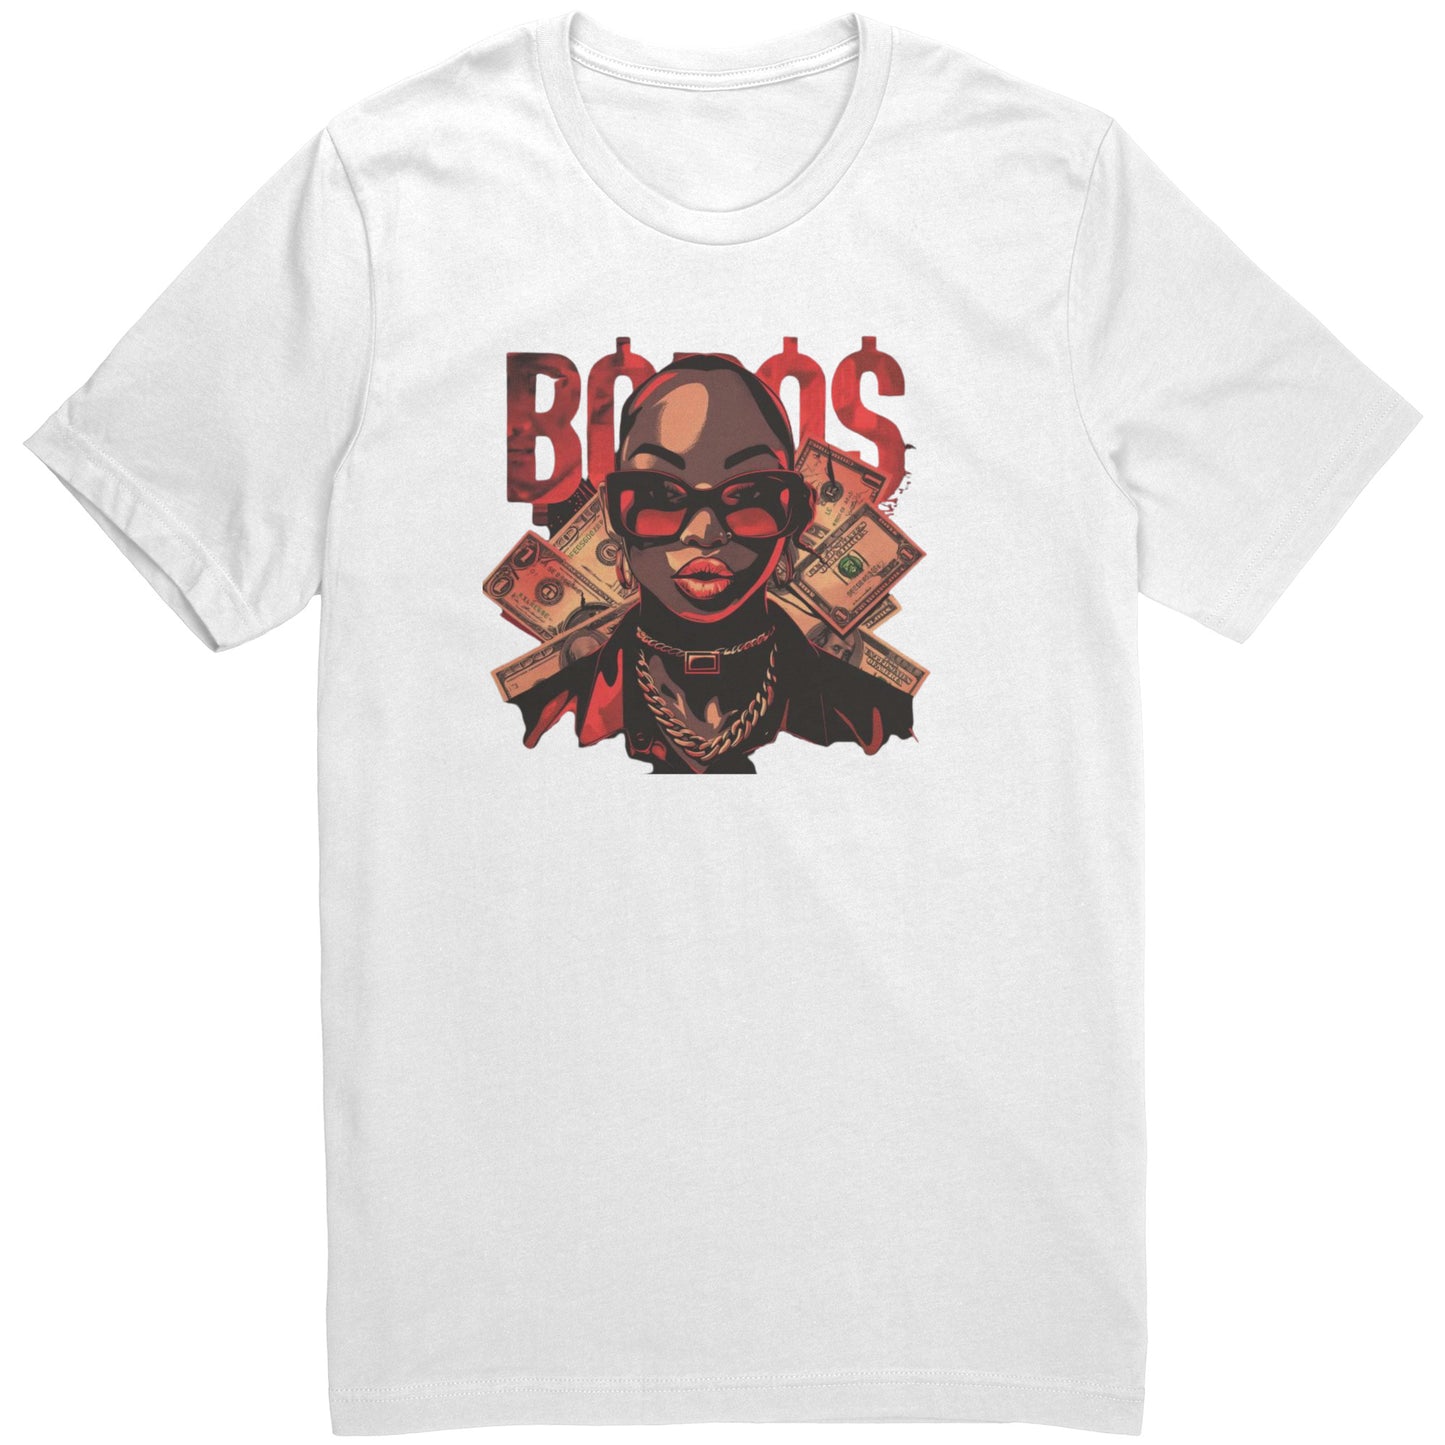 Boss B Tshirts